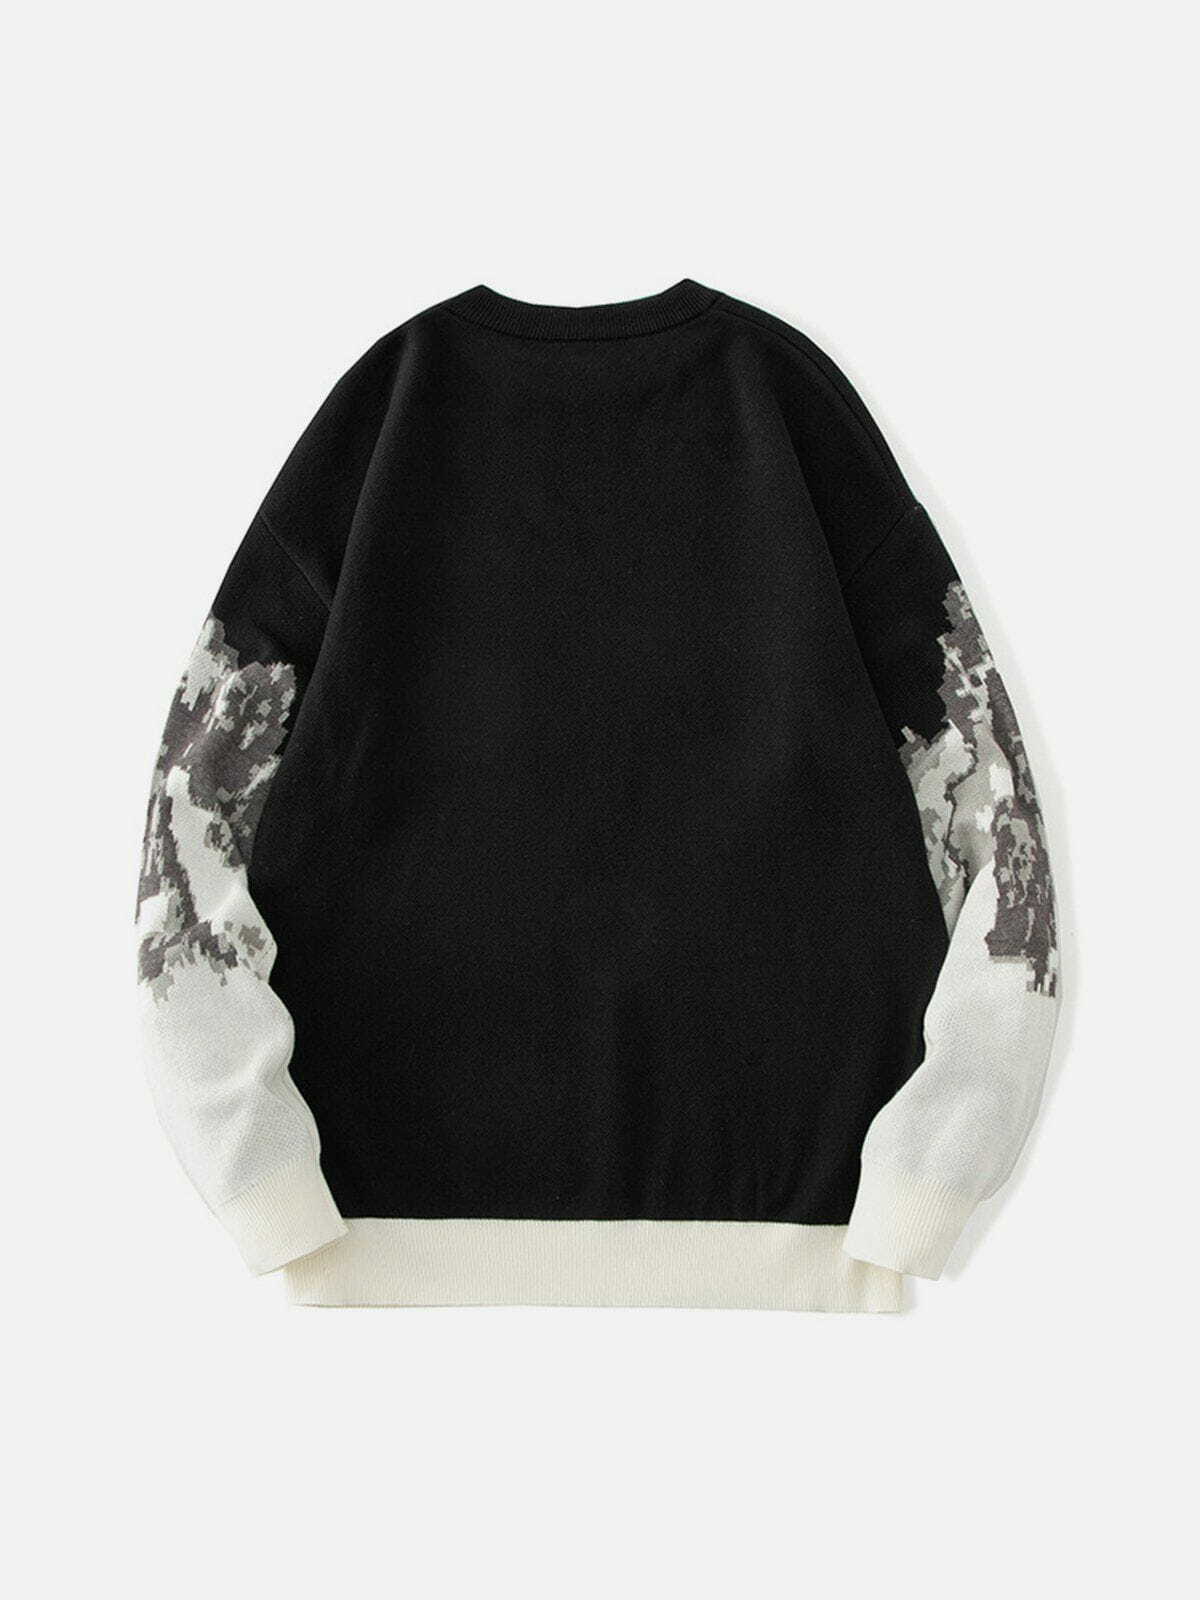 mountain landscape jacquard sweater edgy y2k streetwear 2068